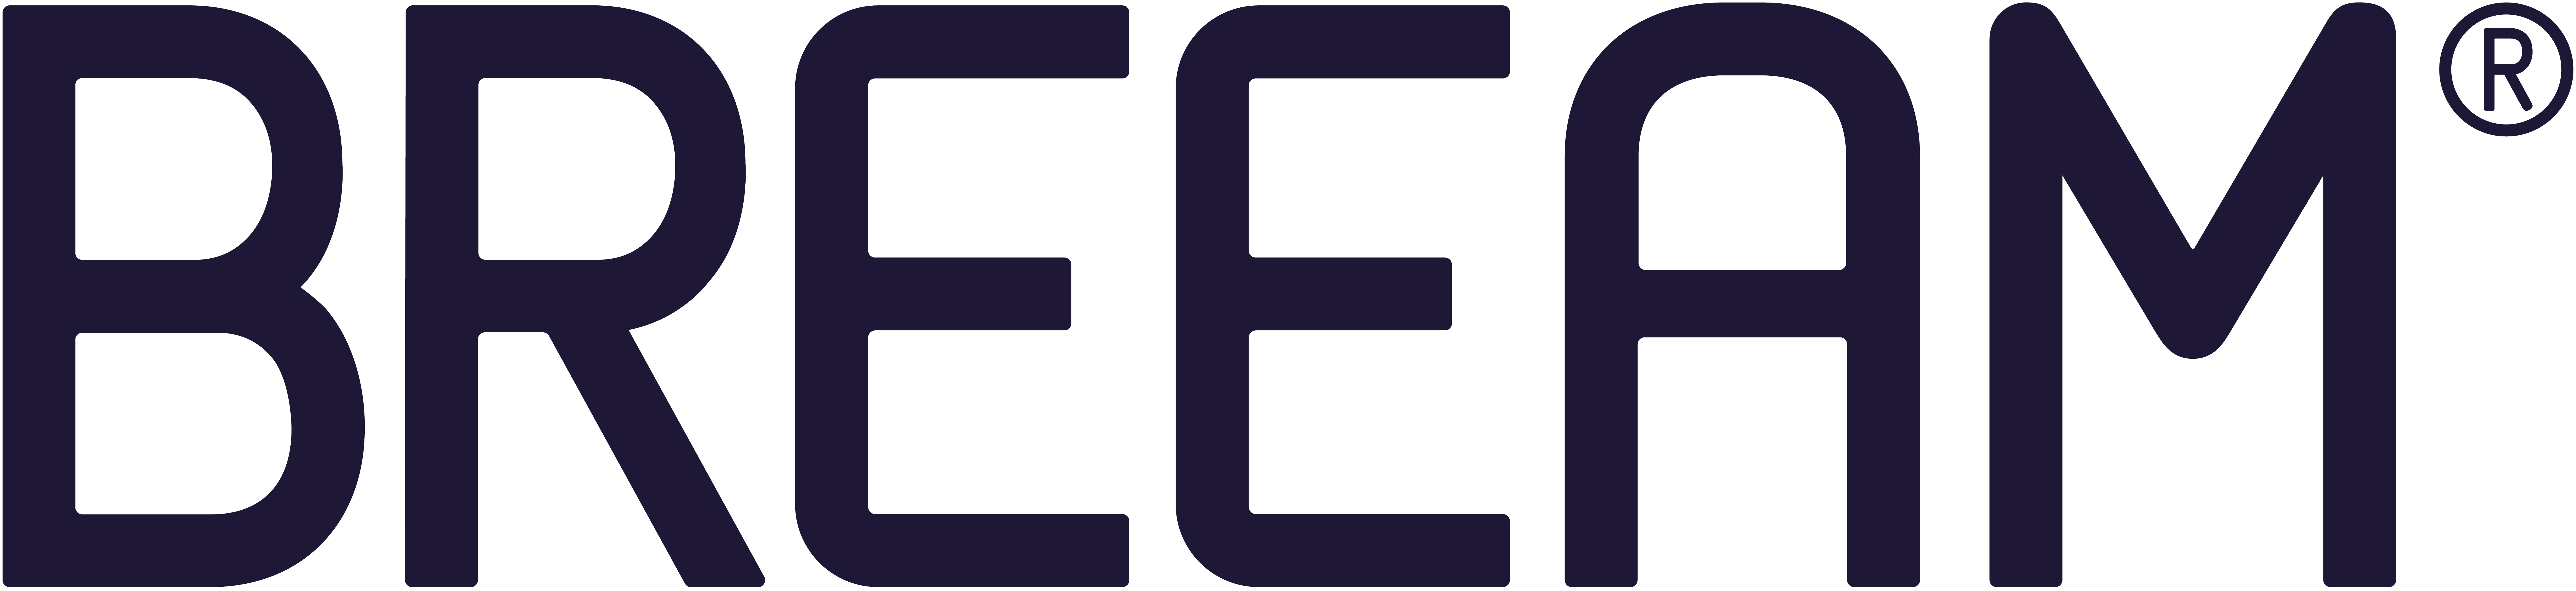 The BREEAM logo